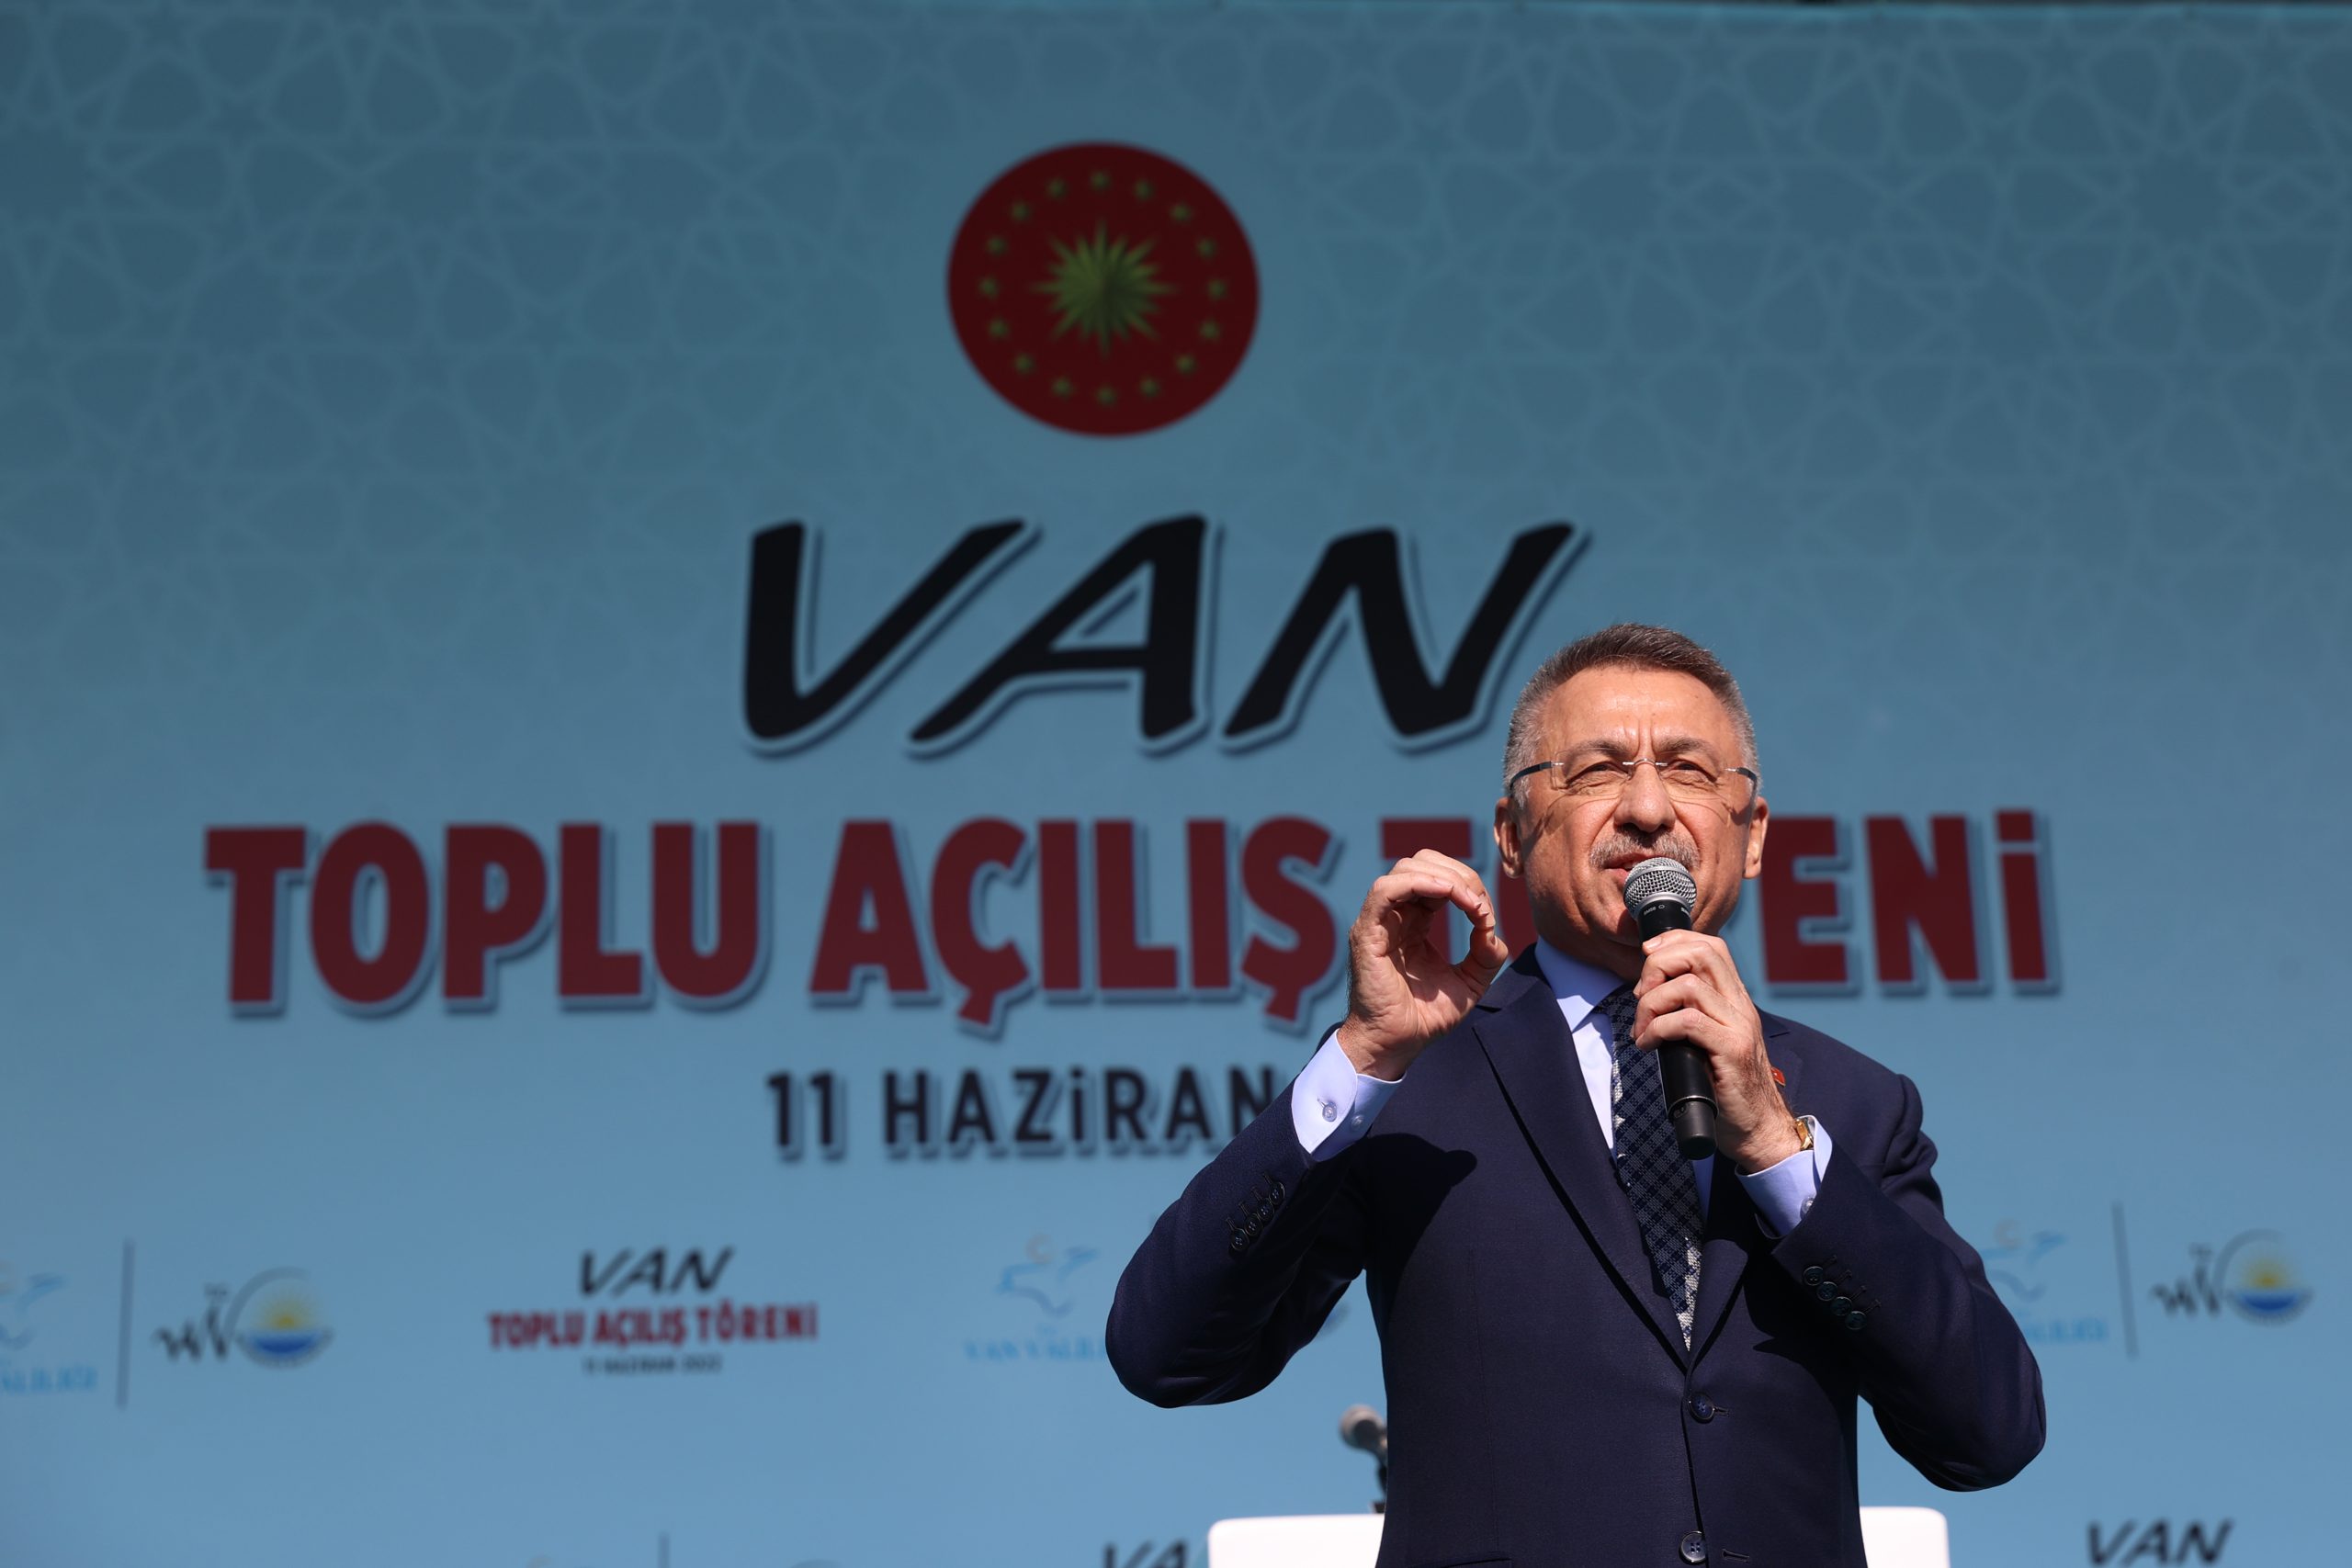 Bakanlar Soylu ve Kasapoğlu, Van’daki toplu açılış töreninde konuştu: